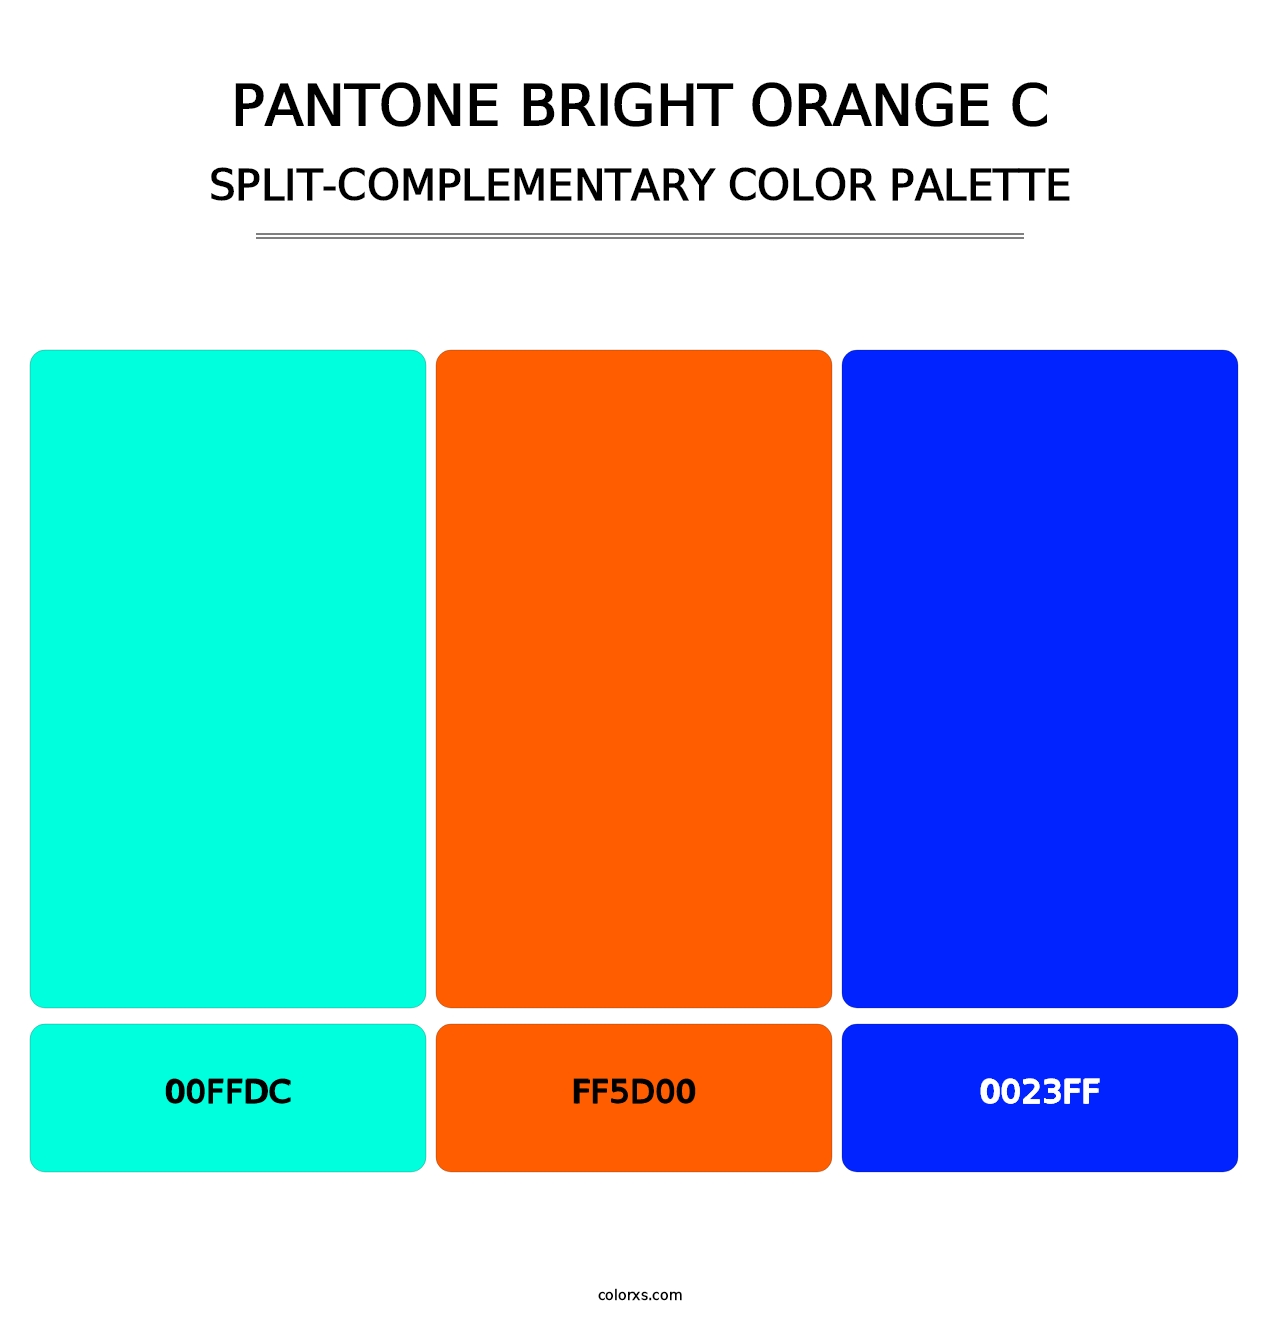 PANTONE Bright Orange C - Split-Complementary Color Palette